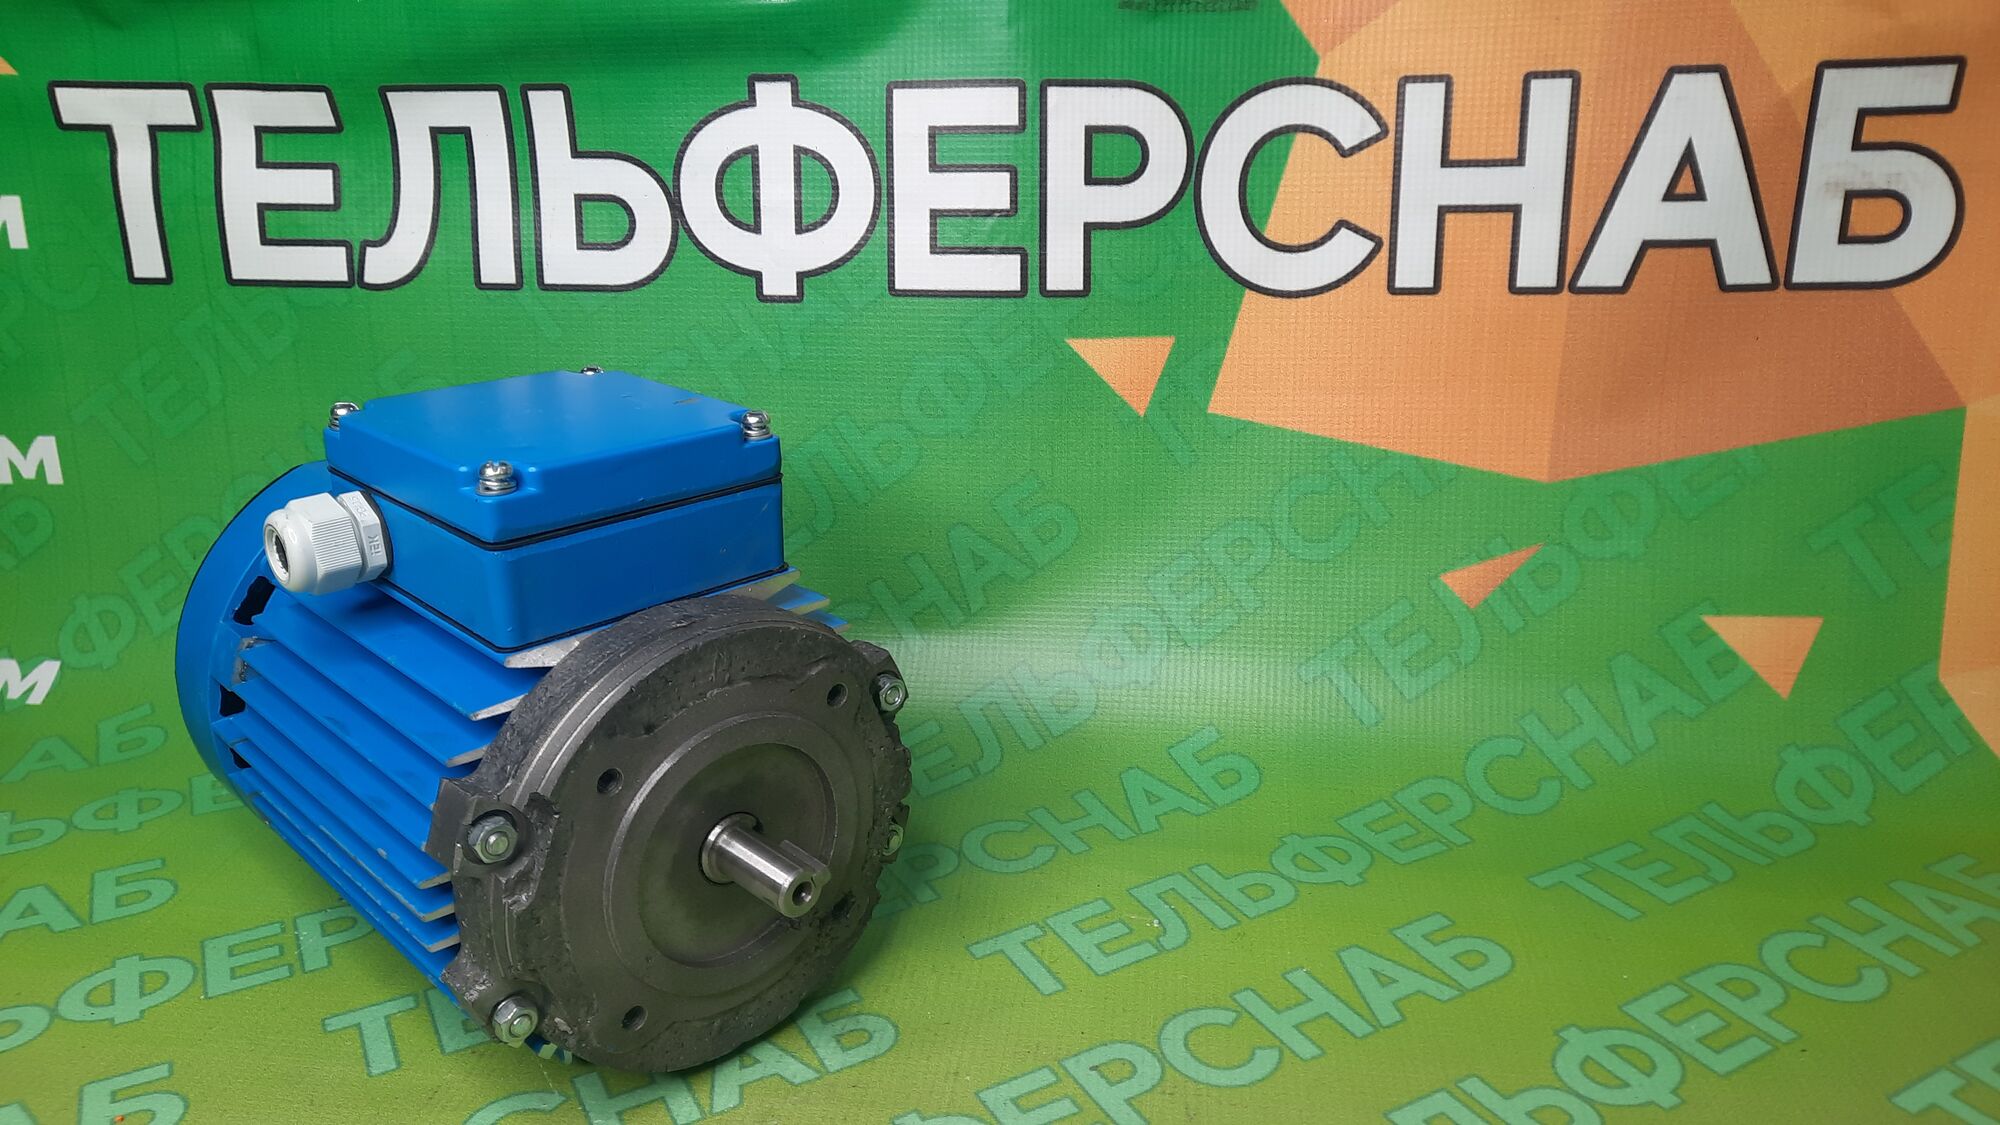 Электродвигатель без тормоза АДС71O4TУ2 0.37 кВт 1300 об/мин, 380 В IM3681 фланец 80 мм для тельфера, Россия